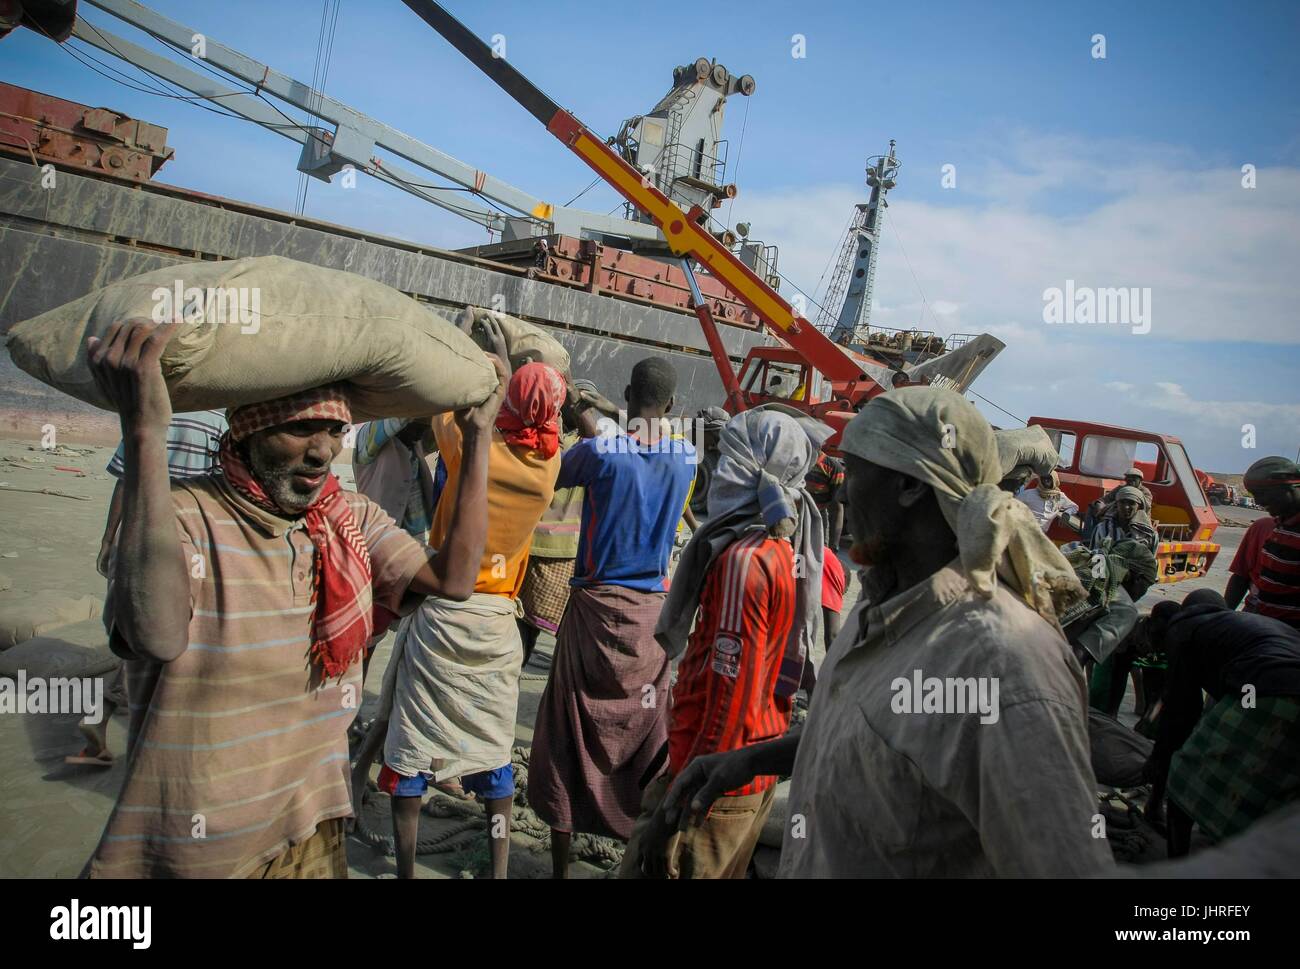 Dock di somali a carico dei lavoratori dei sacchi di cemento importato al porto il 6 agosto 2012 a Mogadiscio, in Somalia. (Foto di Stuart Prezzo via Planetpix) Foto Stock